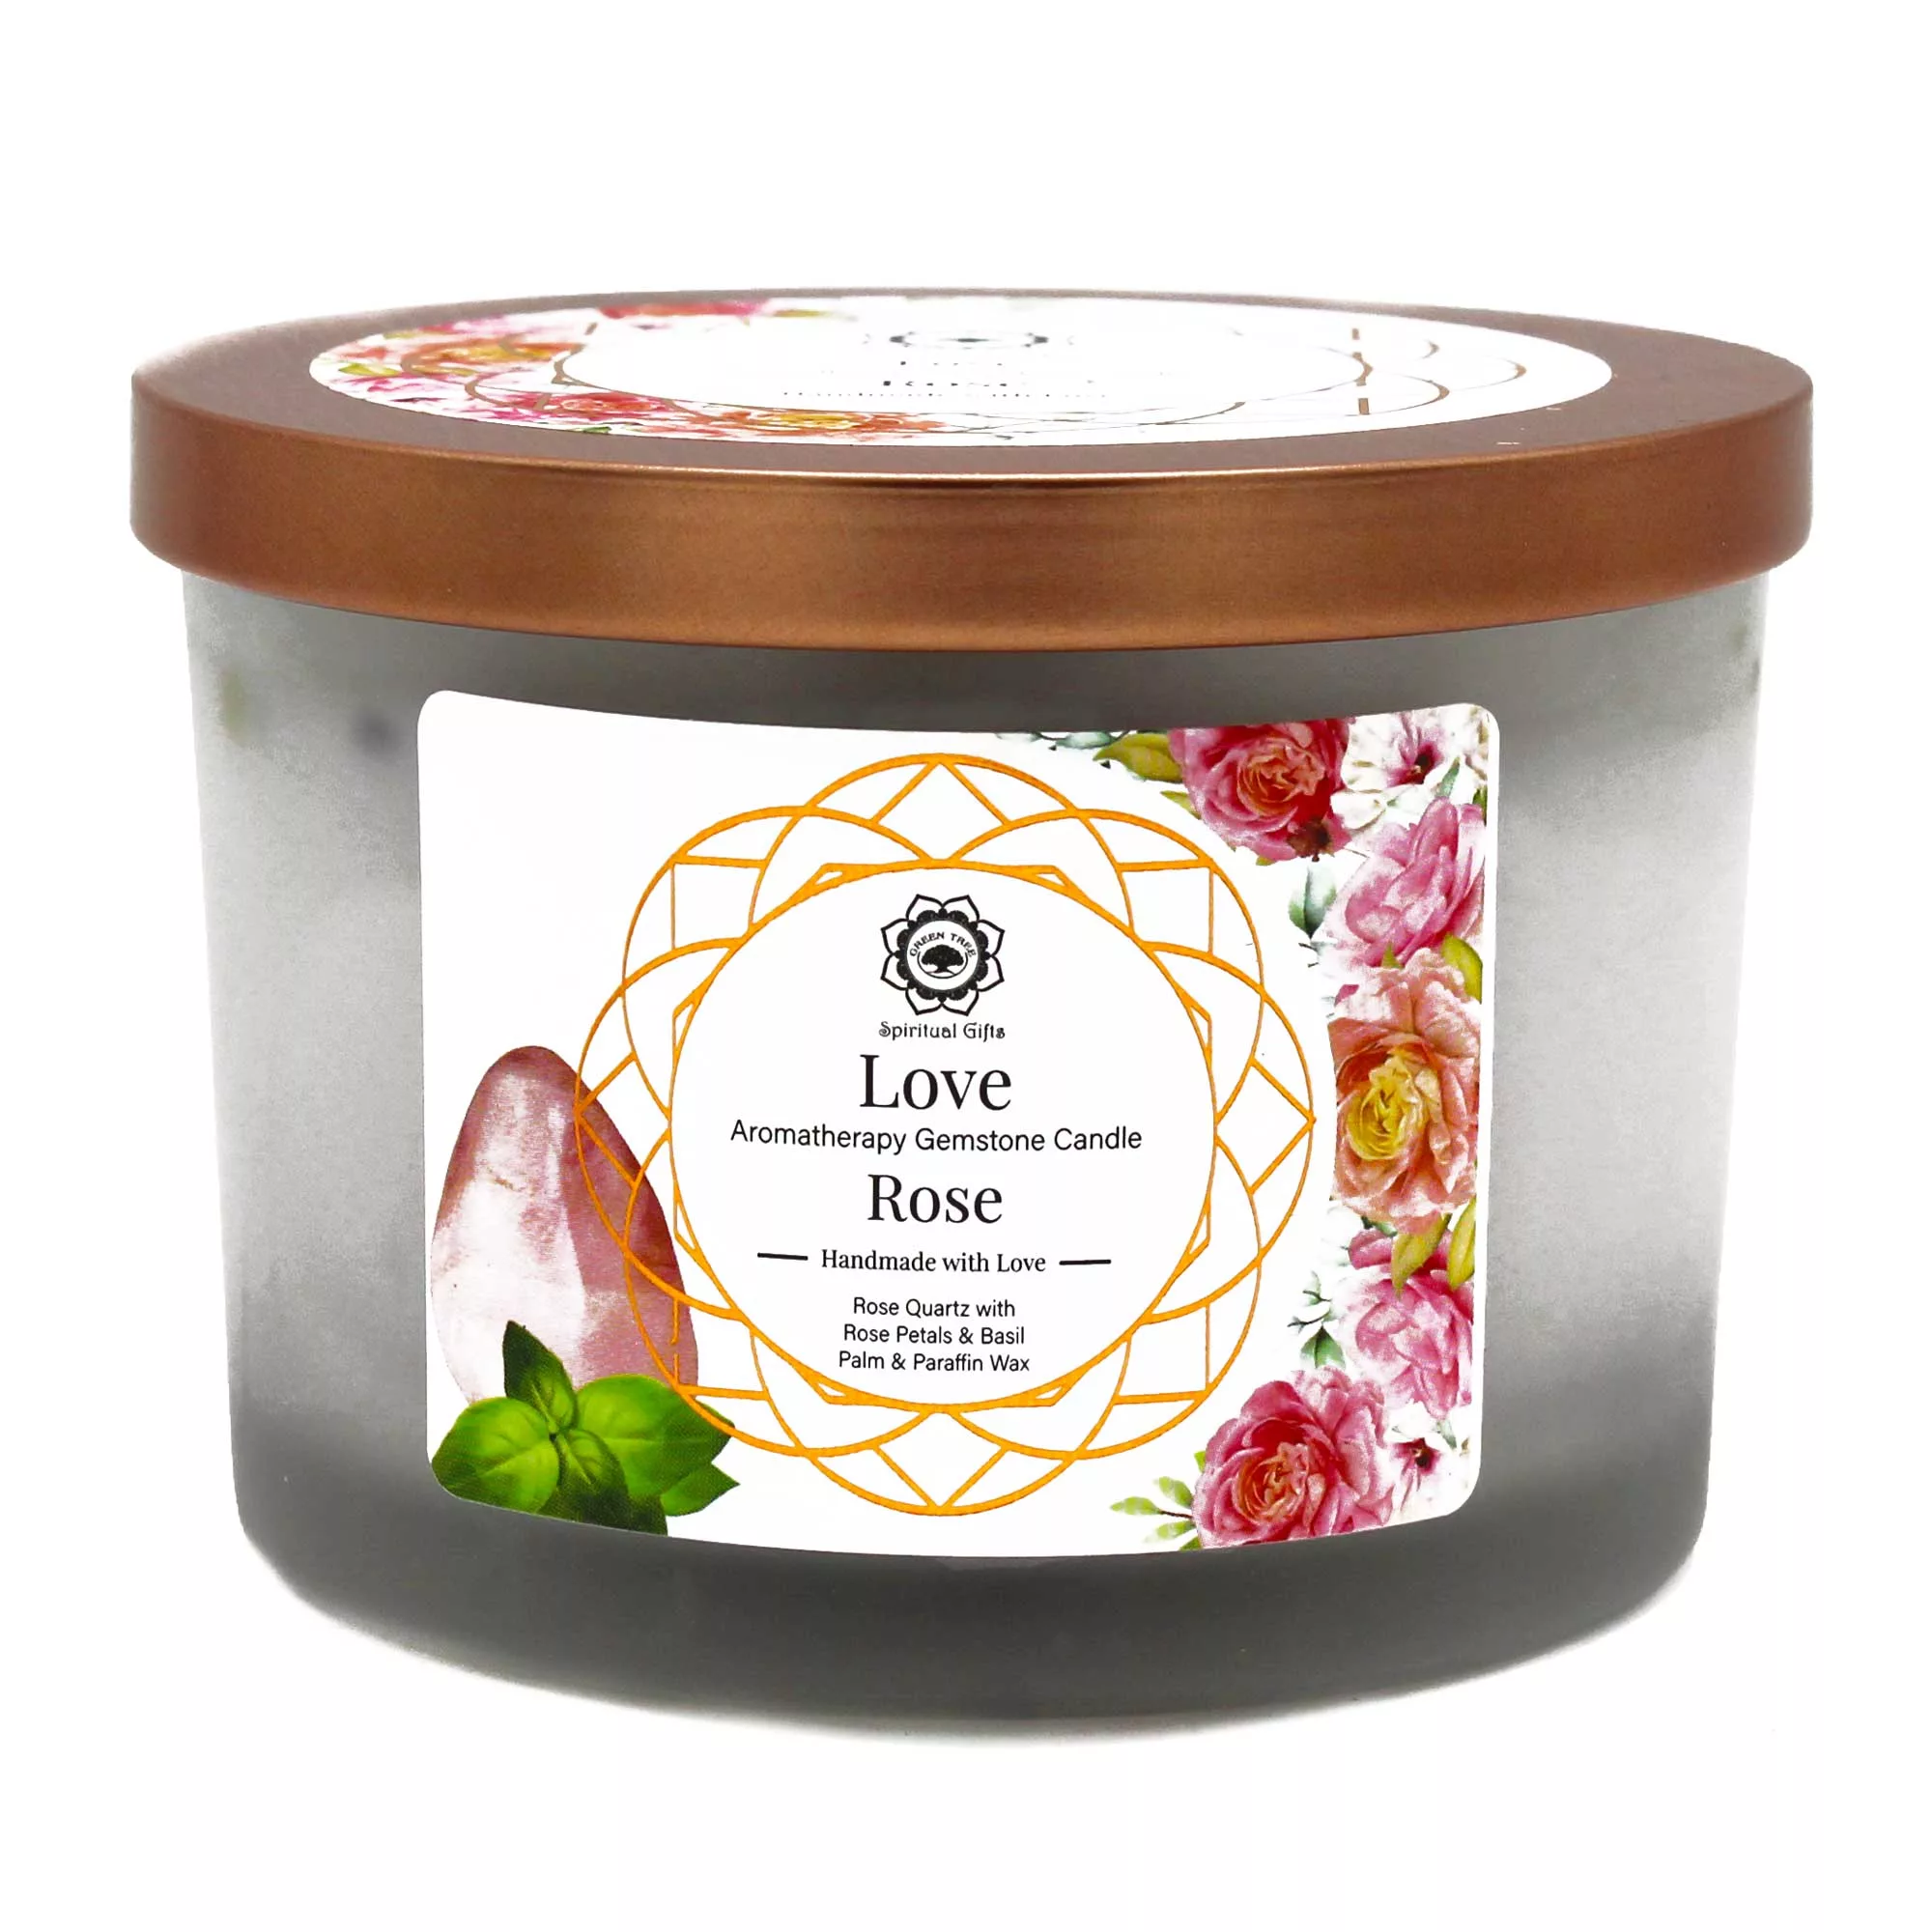 Rose and Rose Quartz Gemstone Candle – Love